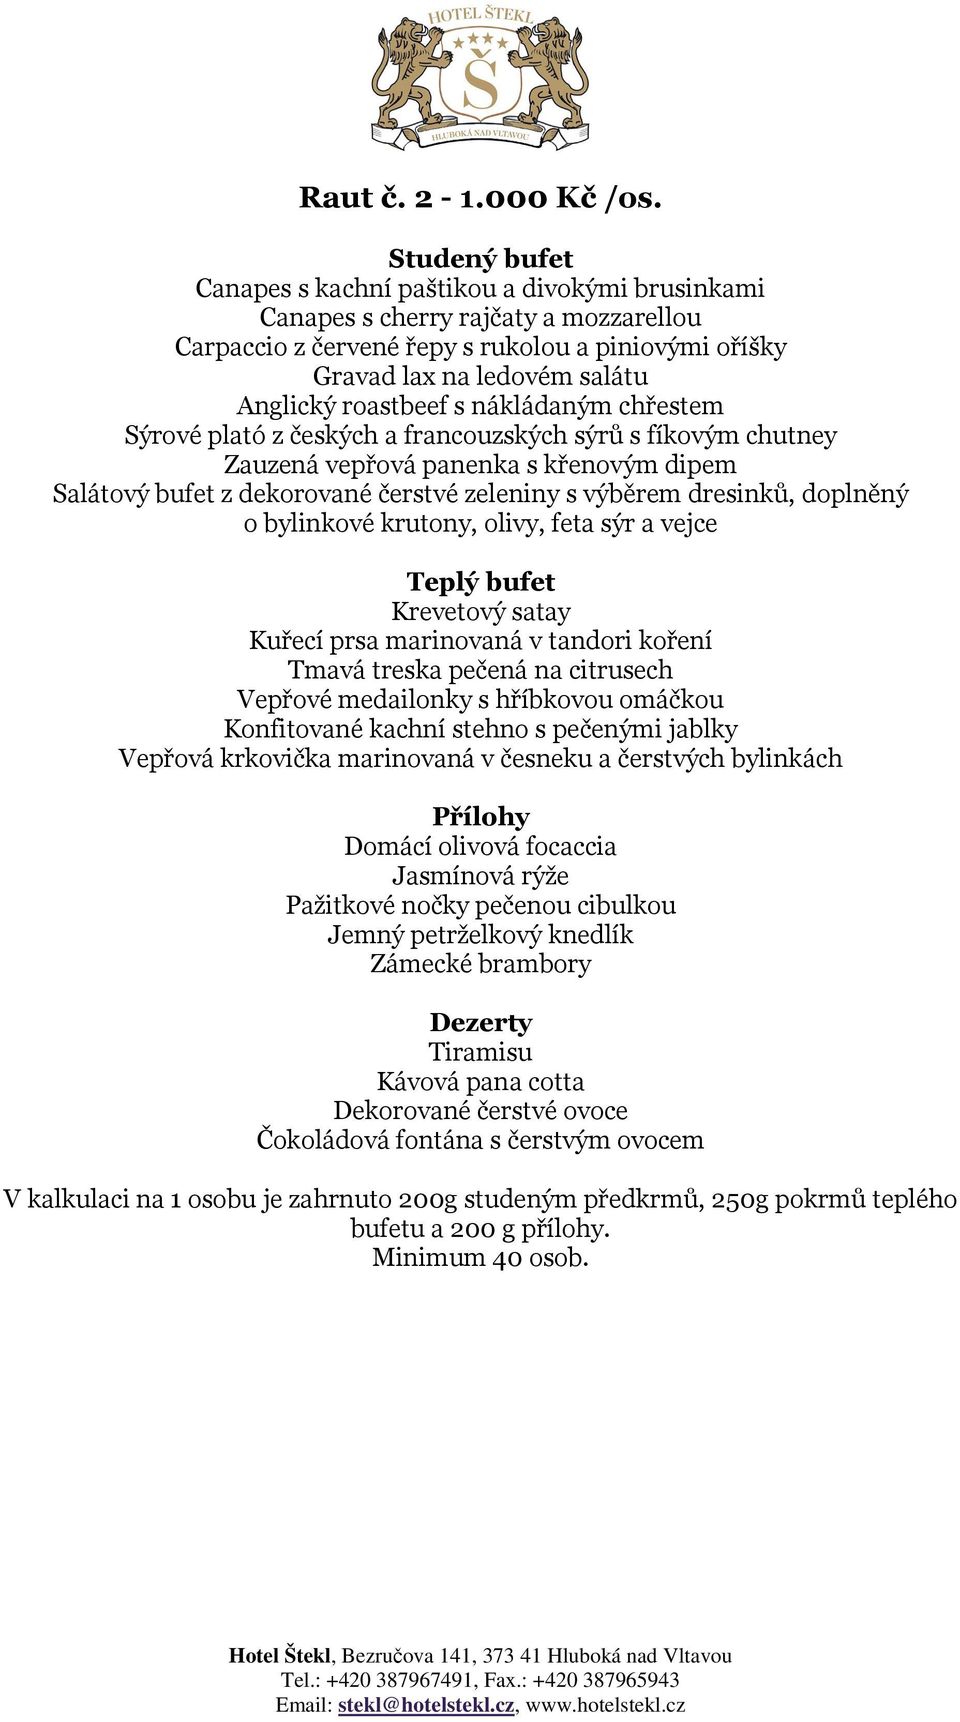 nákládaným chřestem Sýrové plató z českých a francouzských sýrů s fíkovým chutney Zauzená vepřová panenka s křenovým dipem Salátový bufet z dekorované čerstvé zeleniny s výběrem dresinků, doplněný o